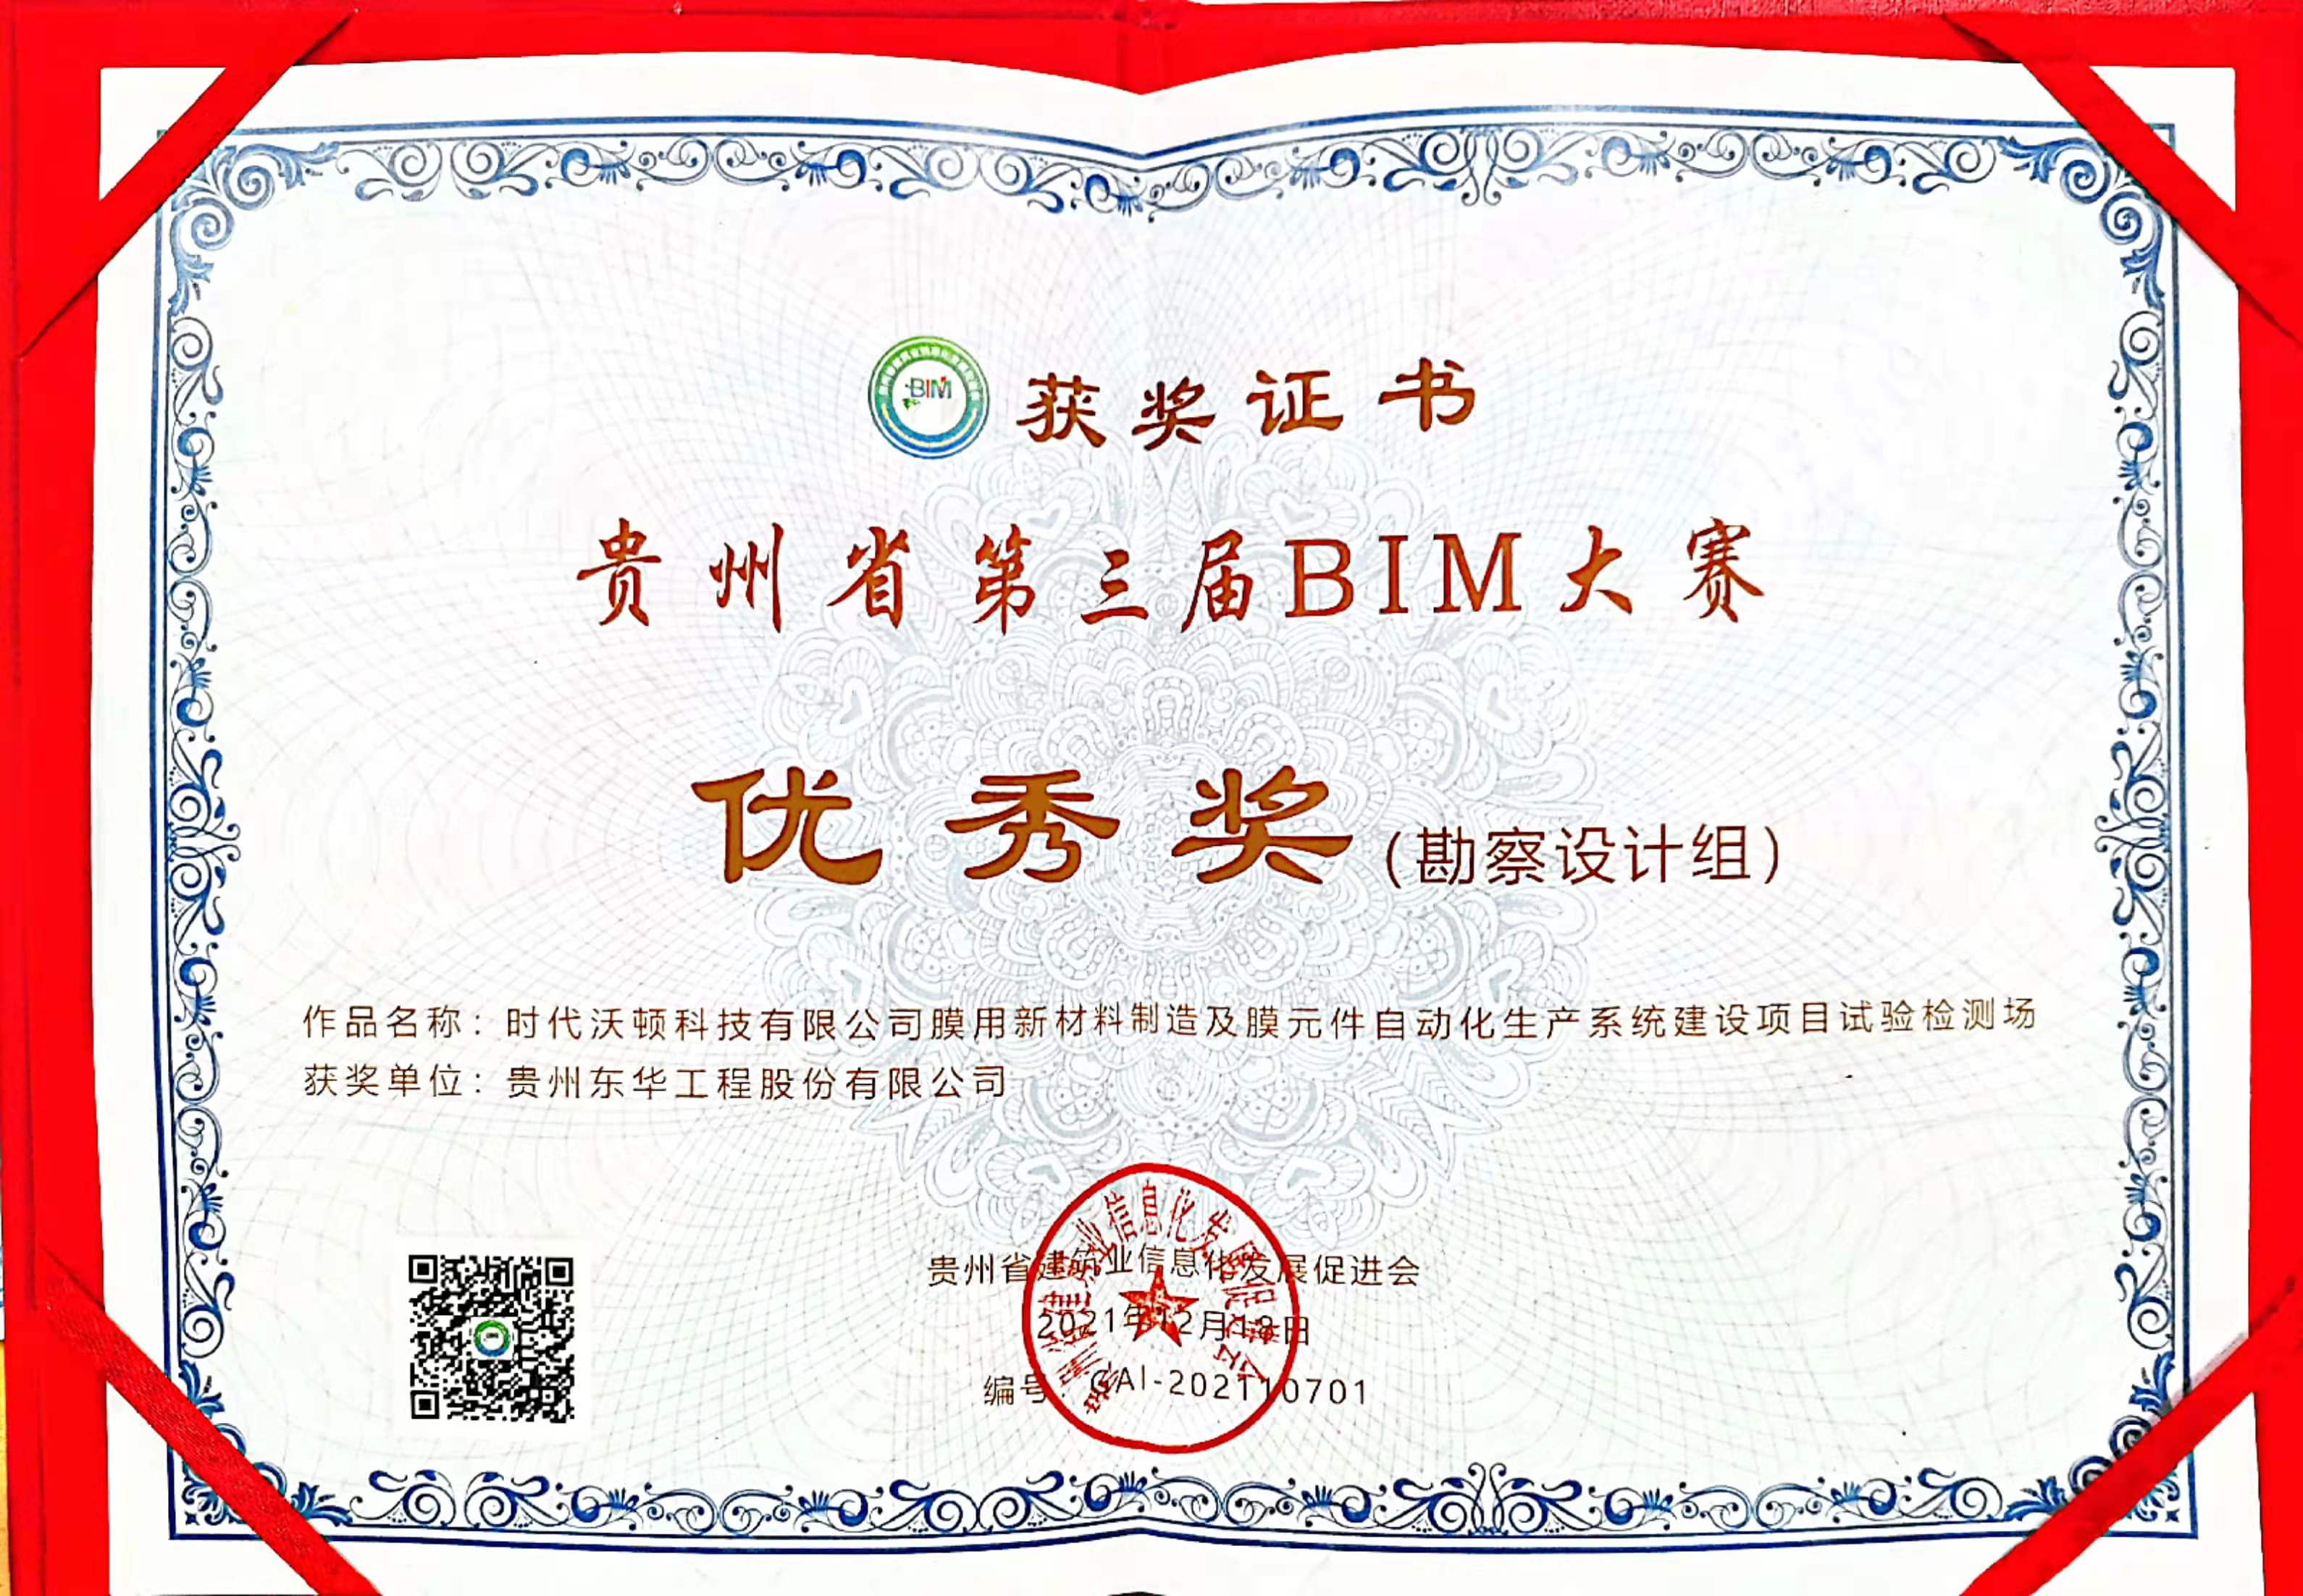 貴州東華榮獲貴州省第三屆BIM大賽獎項